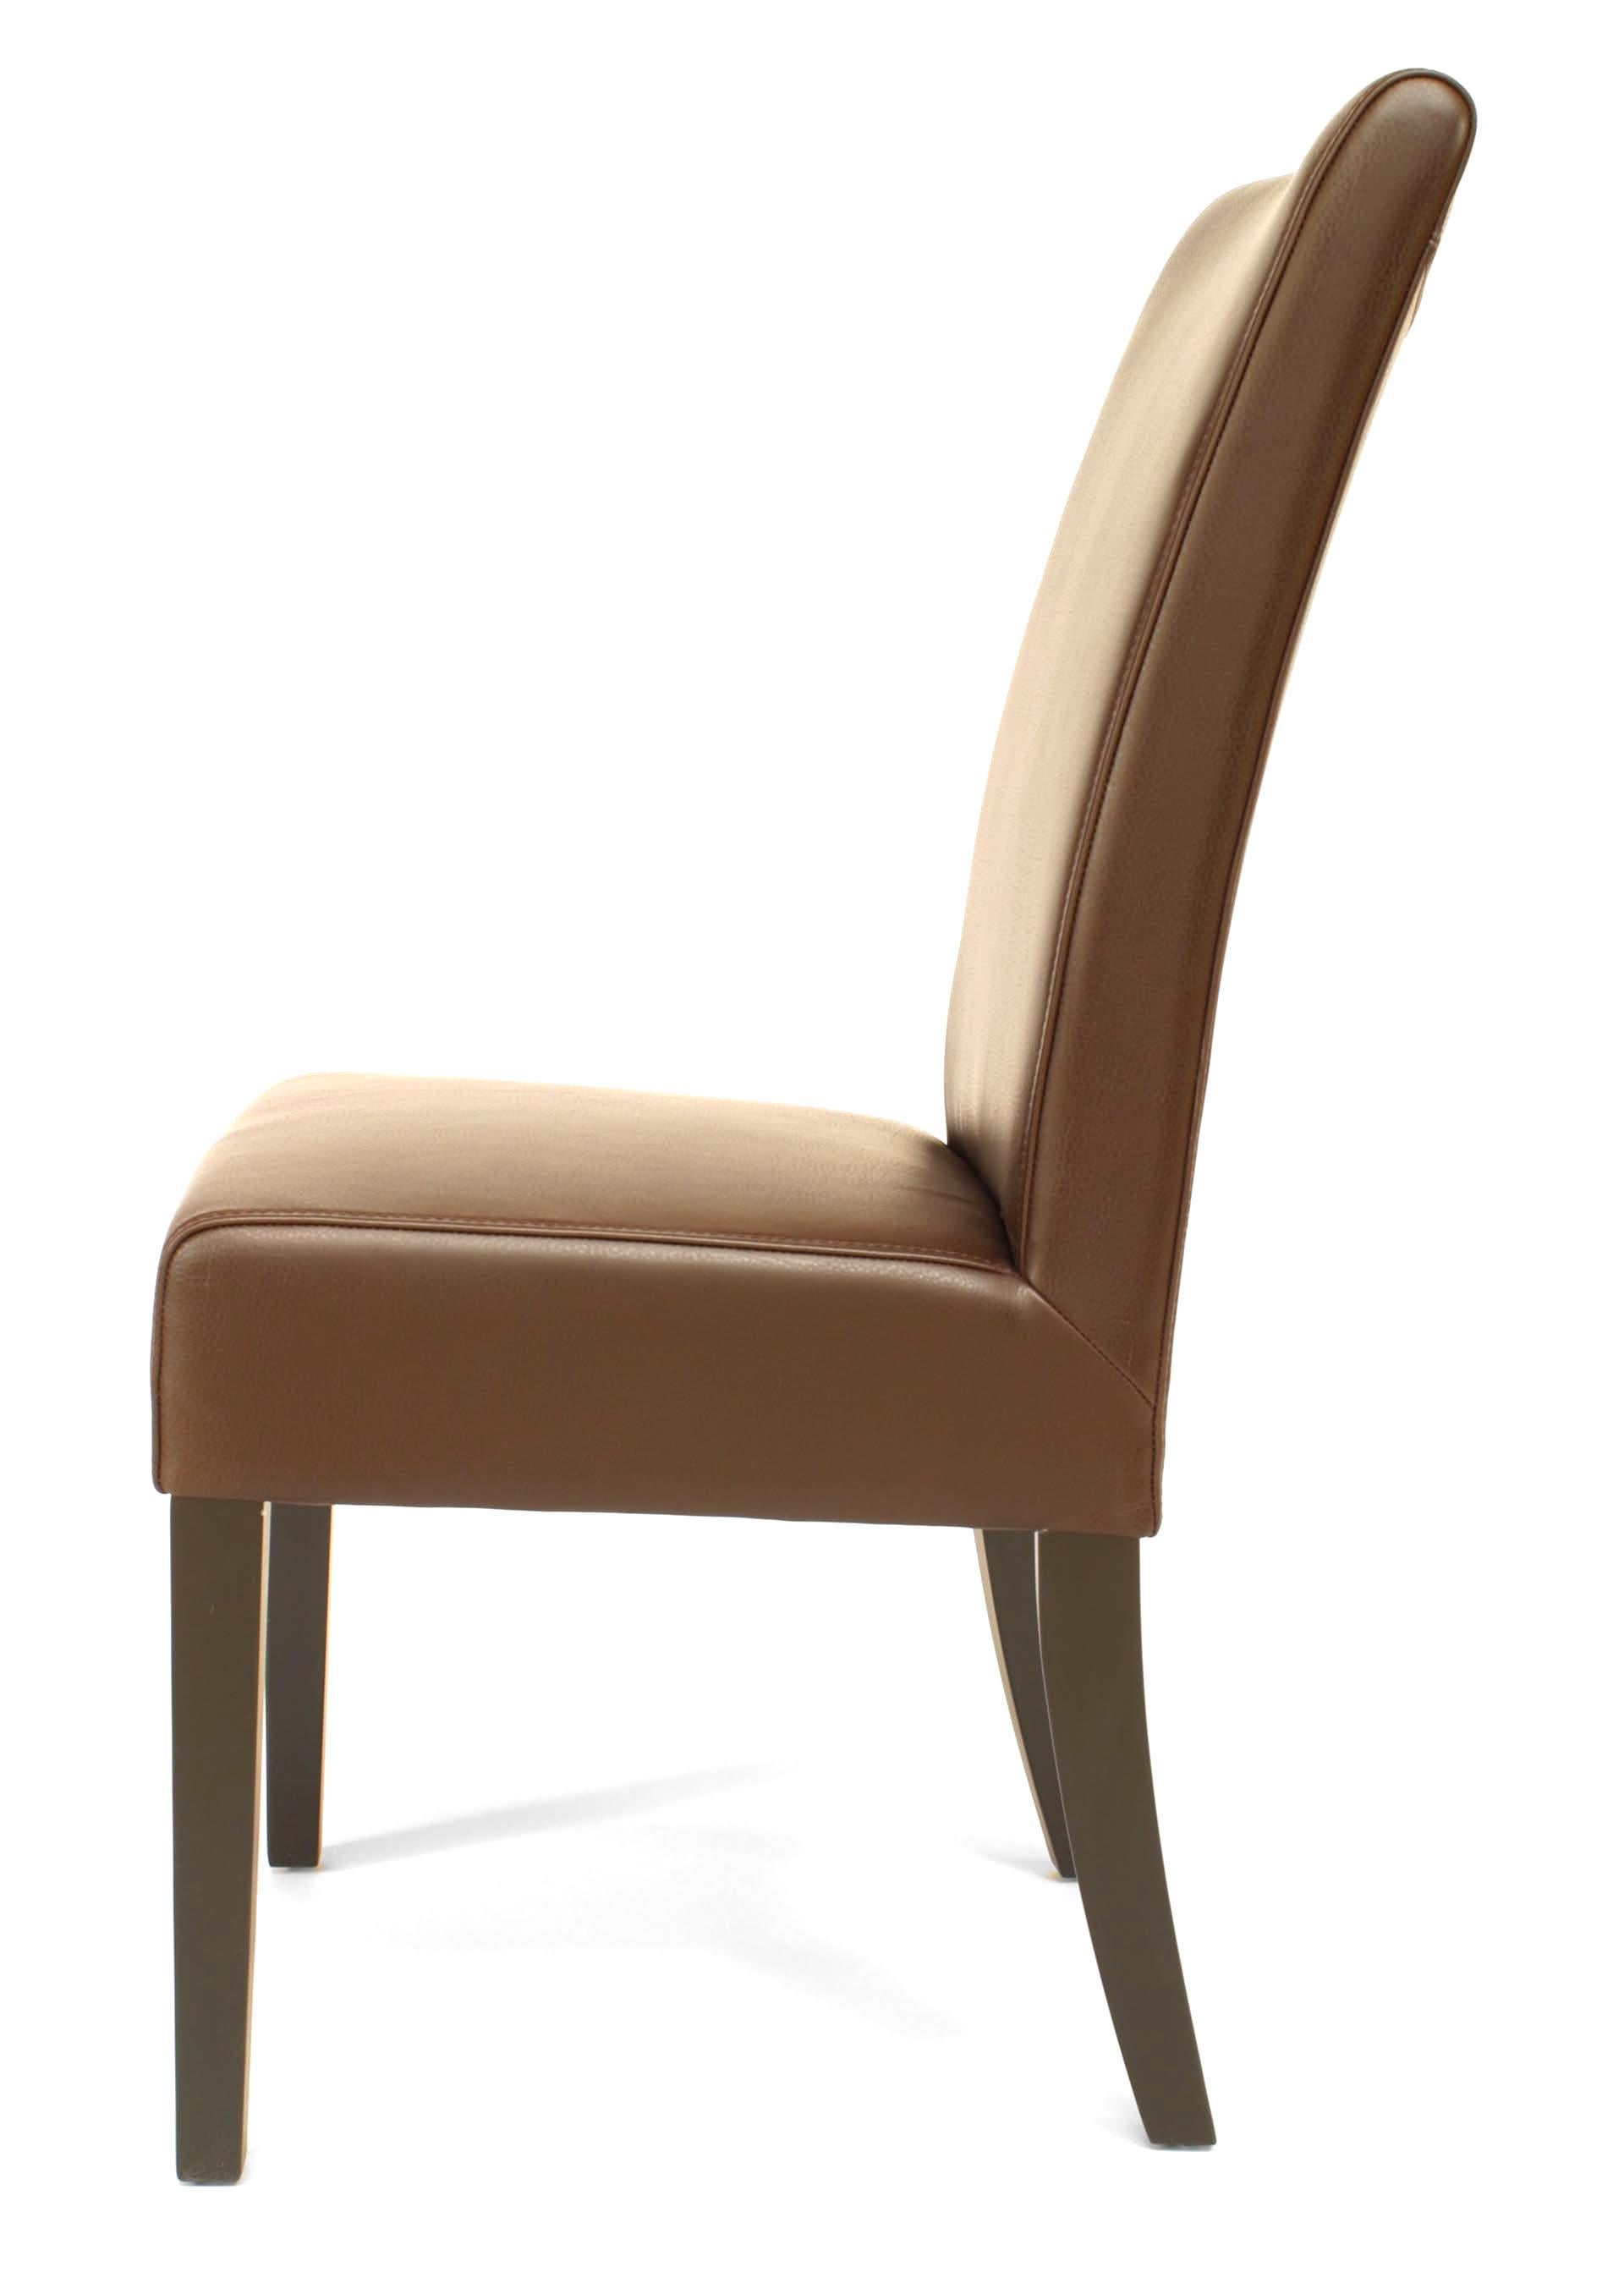 16 Mid-Century Modern braune Parsons Beistellstühle mit ledergepolsterter Sitzfläche und Rückenlehne. (Preis pro Stück).